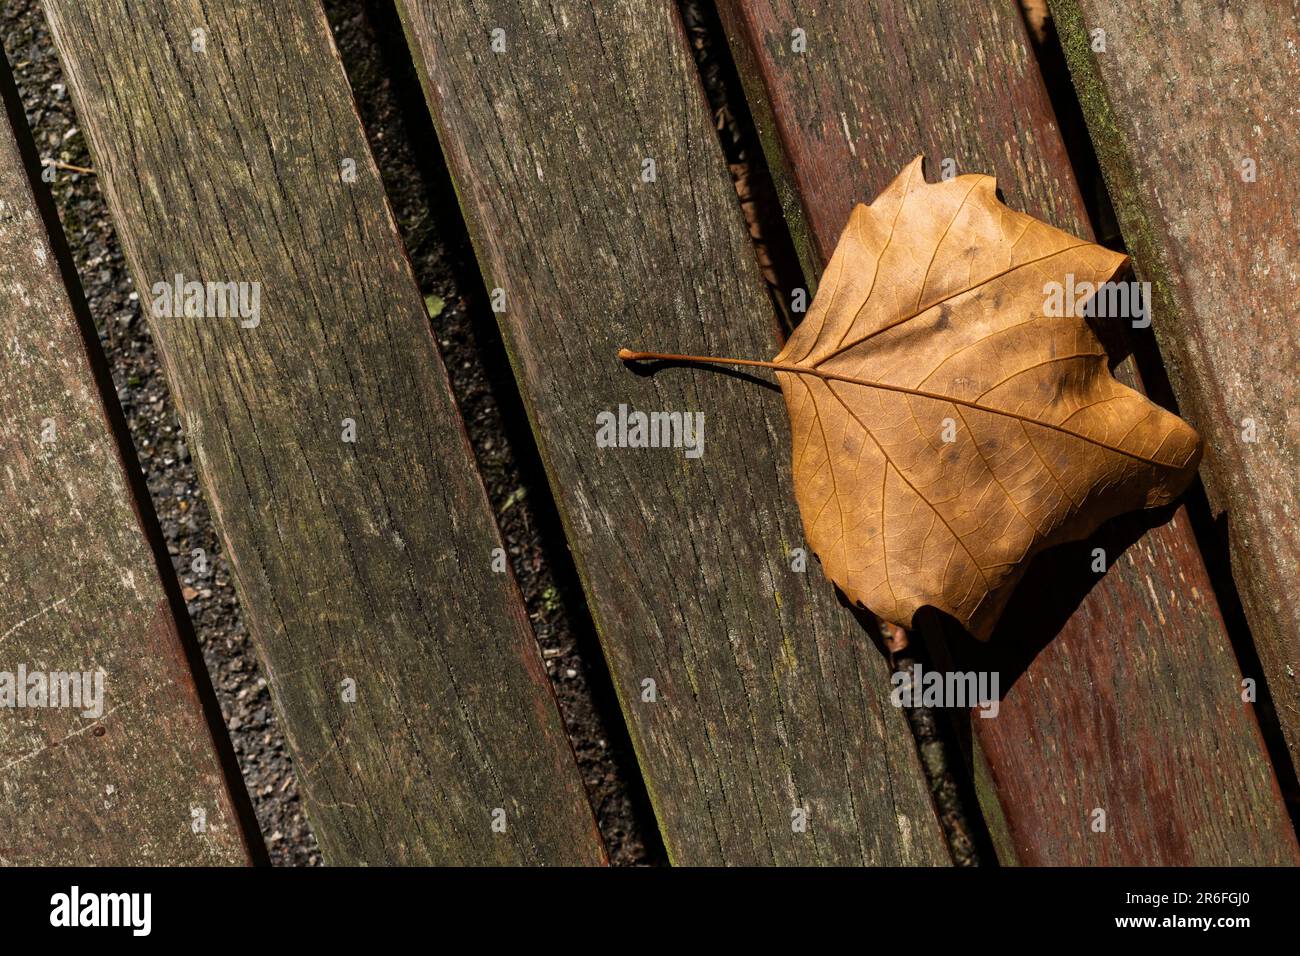 Une feuille d'arbre d'avion fragile mort Platanus située sur les lattes en bois d'un banc dans un parc de Cornwall au Royaume-Uni. Banque D'Images